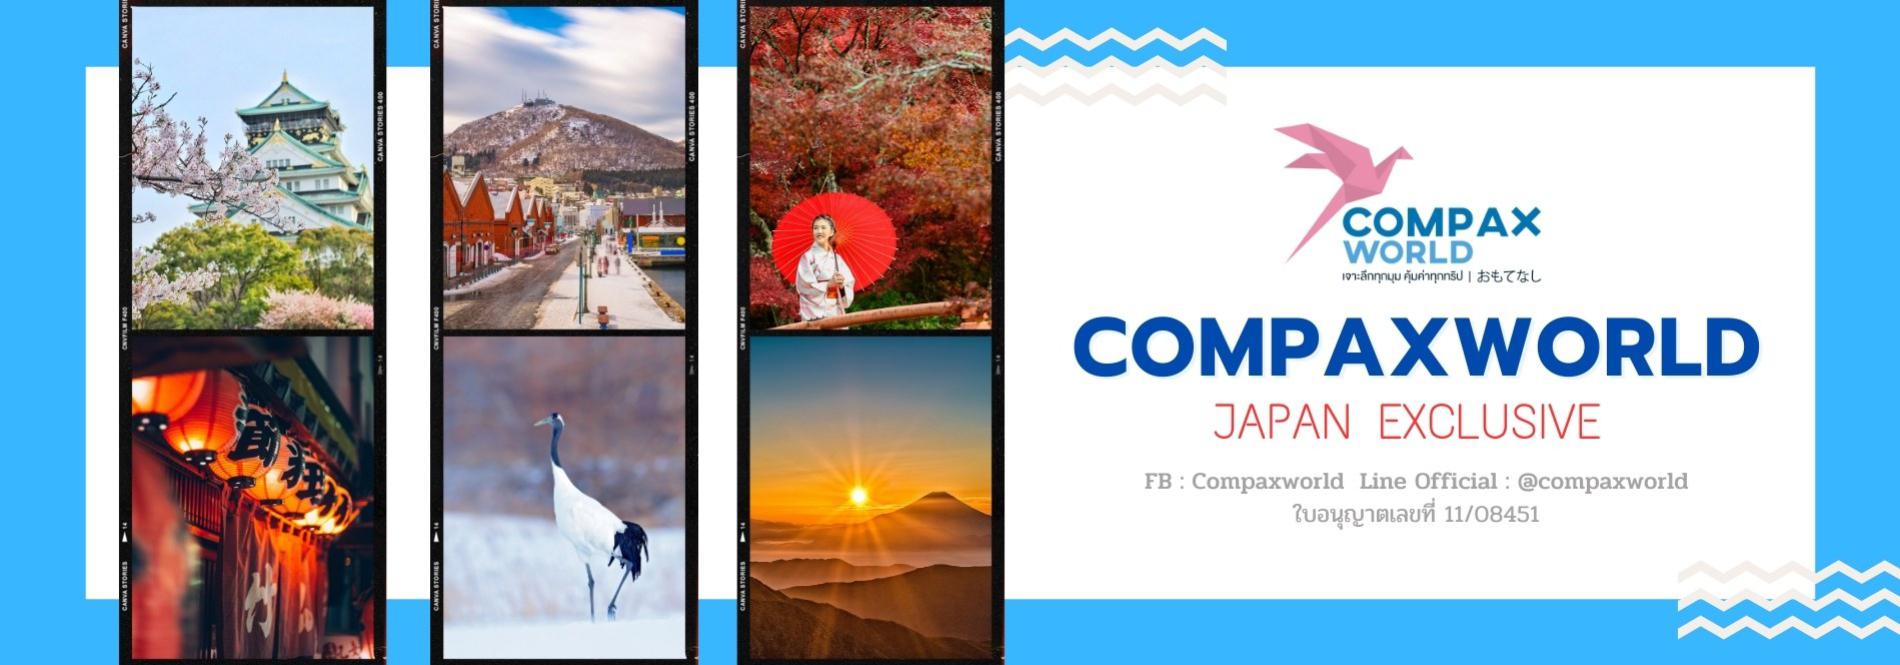 สัมผัสประสบการณ์การท่องเที่ยวประเทศญี่ปุ่นระดับพรีเมียม แบบเจาะลึกที่คุณจะไม่มีวันลืม ที่พักสุดหรู อาหารดี มีสไตล์ CompaxWorld ทัวร์ญี่ปุ่นระดับพรีเมียม นำท่านเที่ยวแบบเจาะลึกประสบการณ์ทางวัฒนธรรมในแบบฉบับญี่ปุ่น